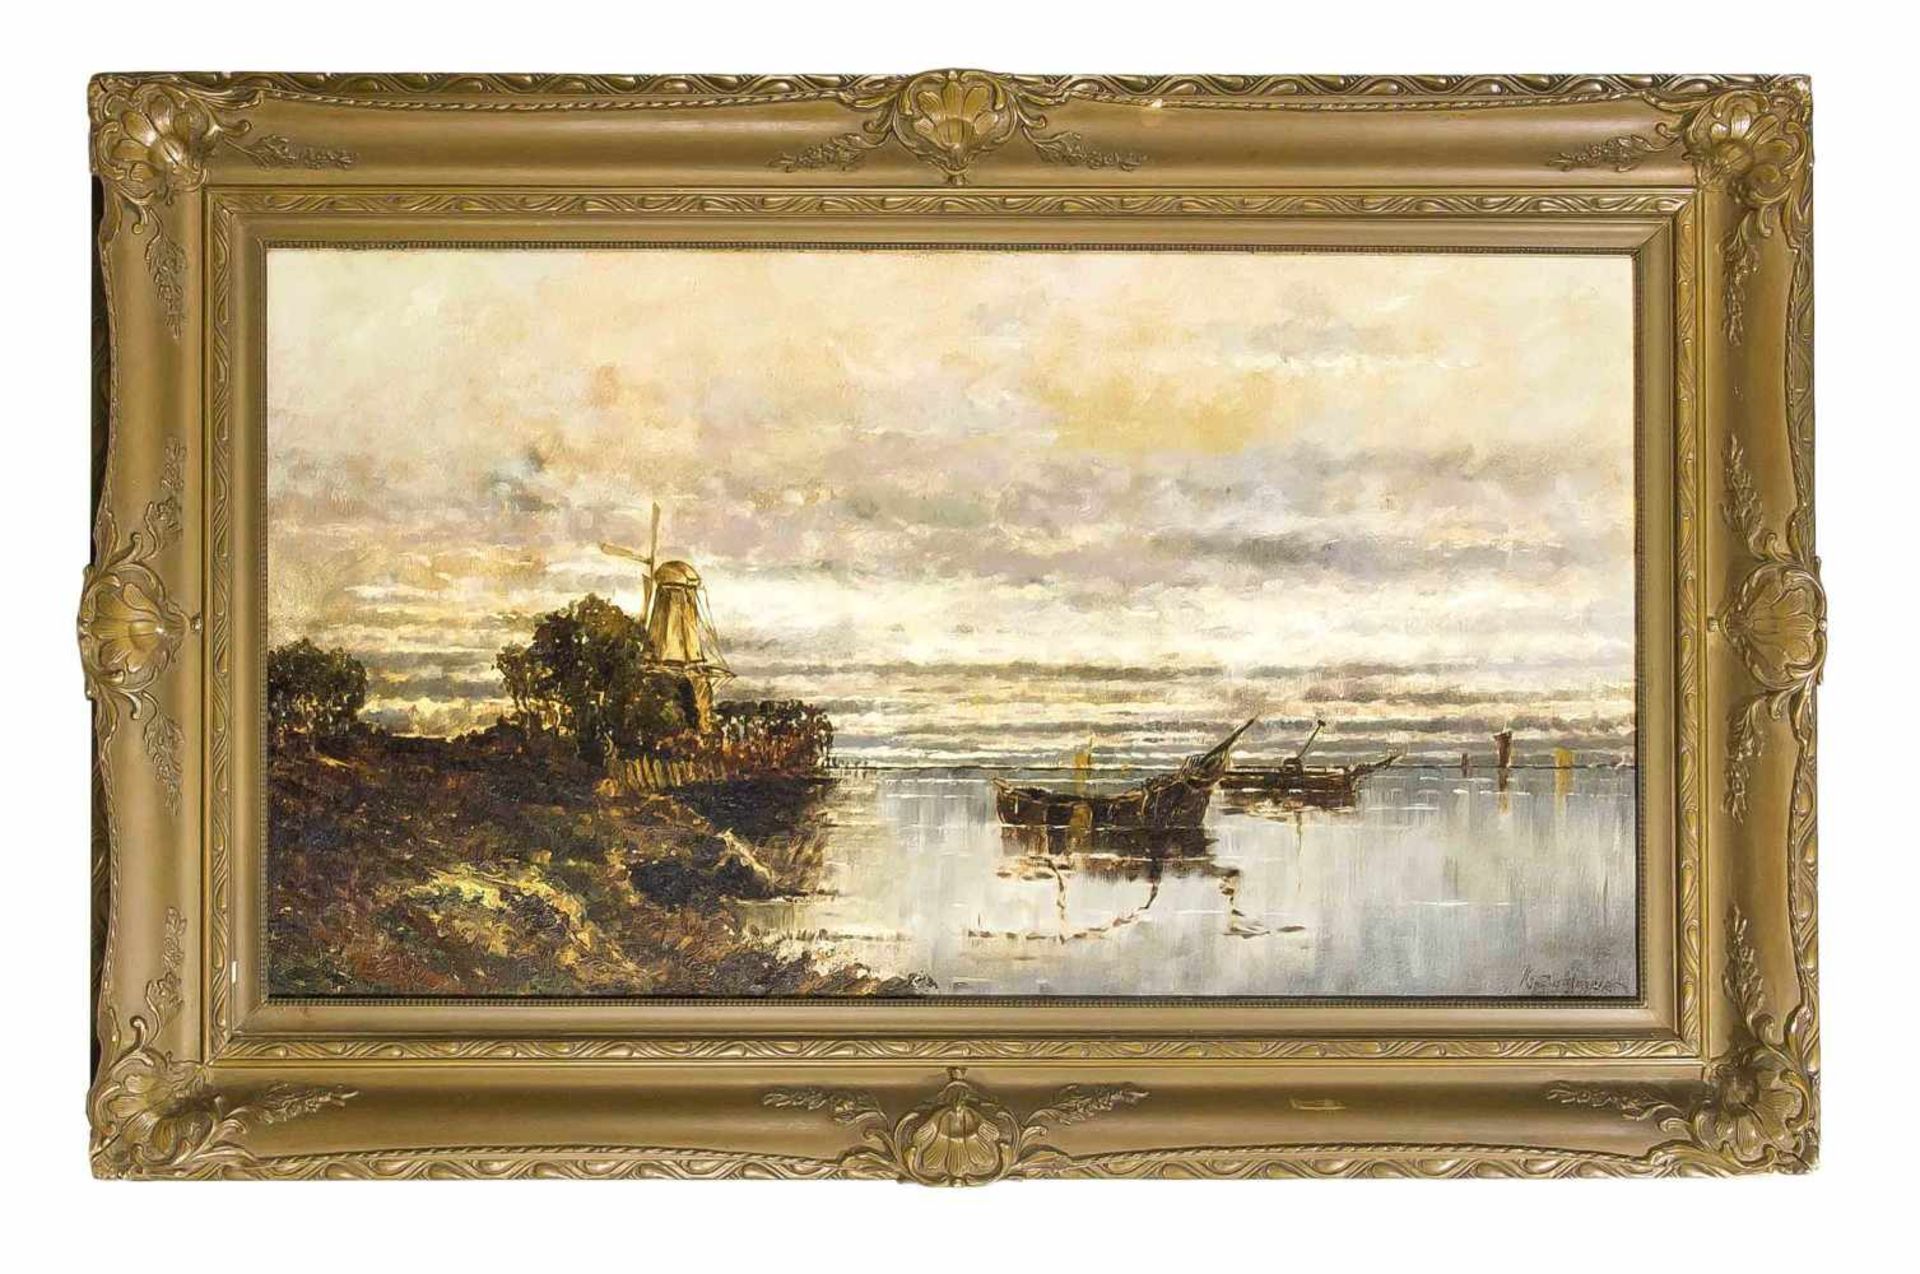 Sedlmeier, K. Landschaftsmaler um 1900. Niederländische Küstenlandschaft. Öl/Lwd., u. re.sign. K.